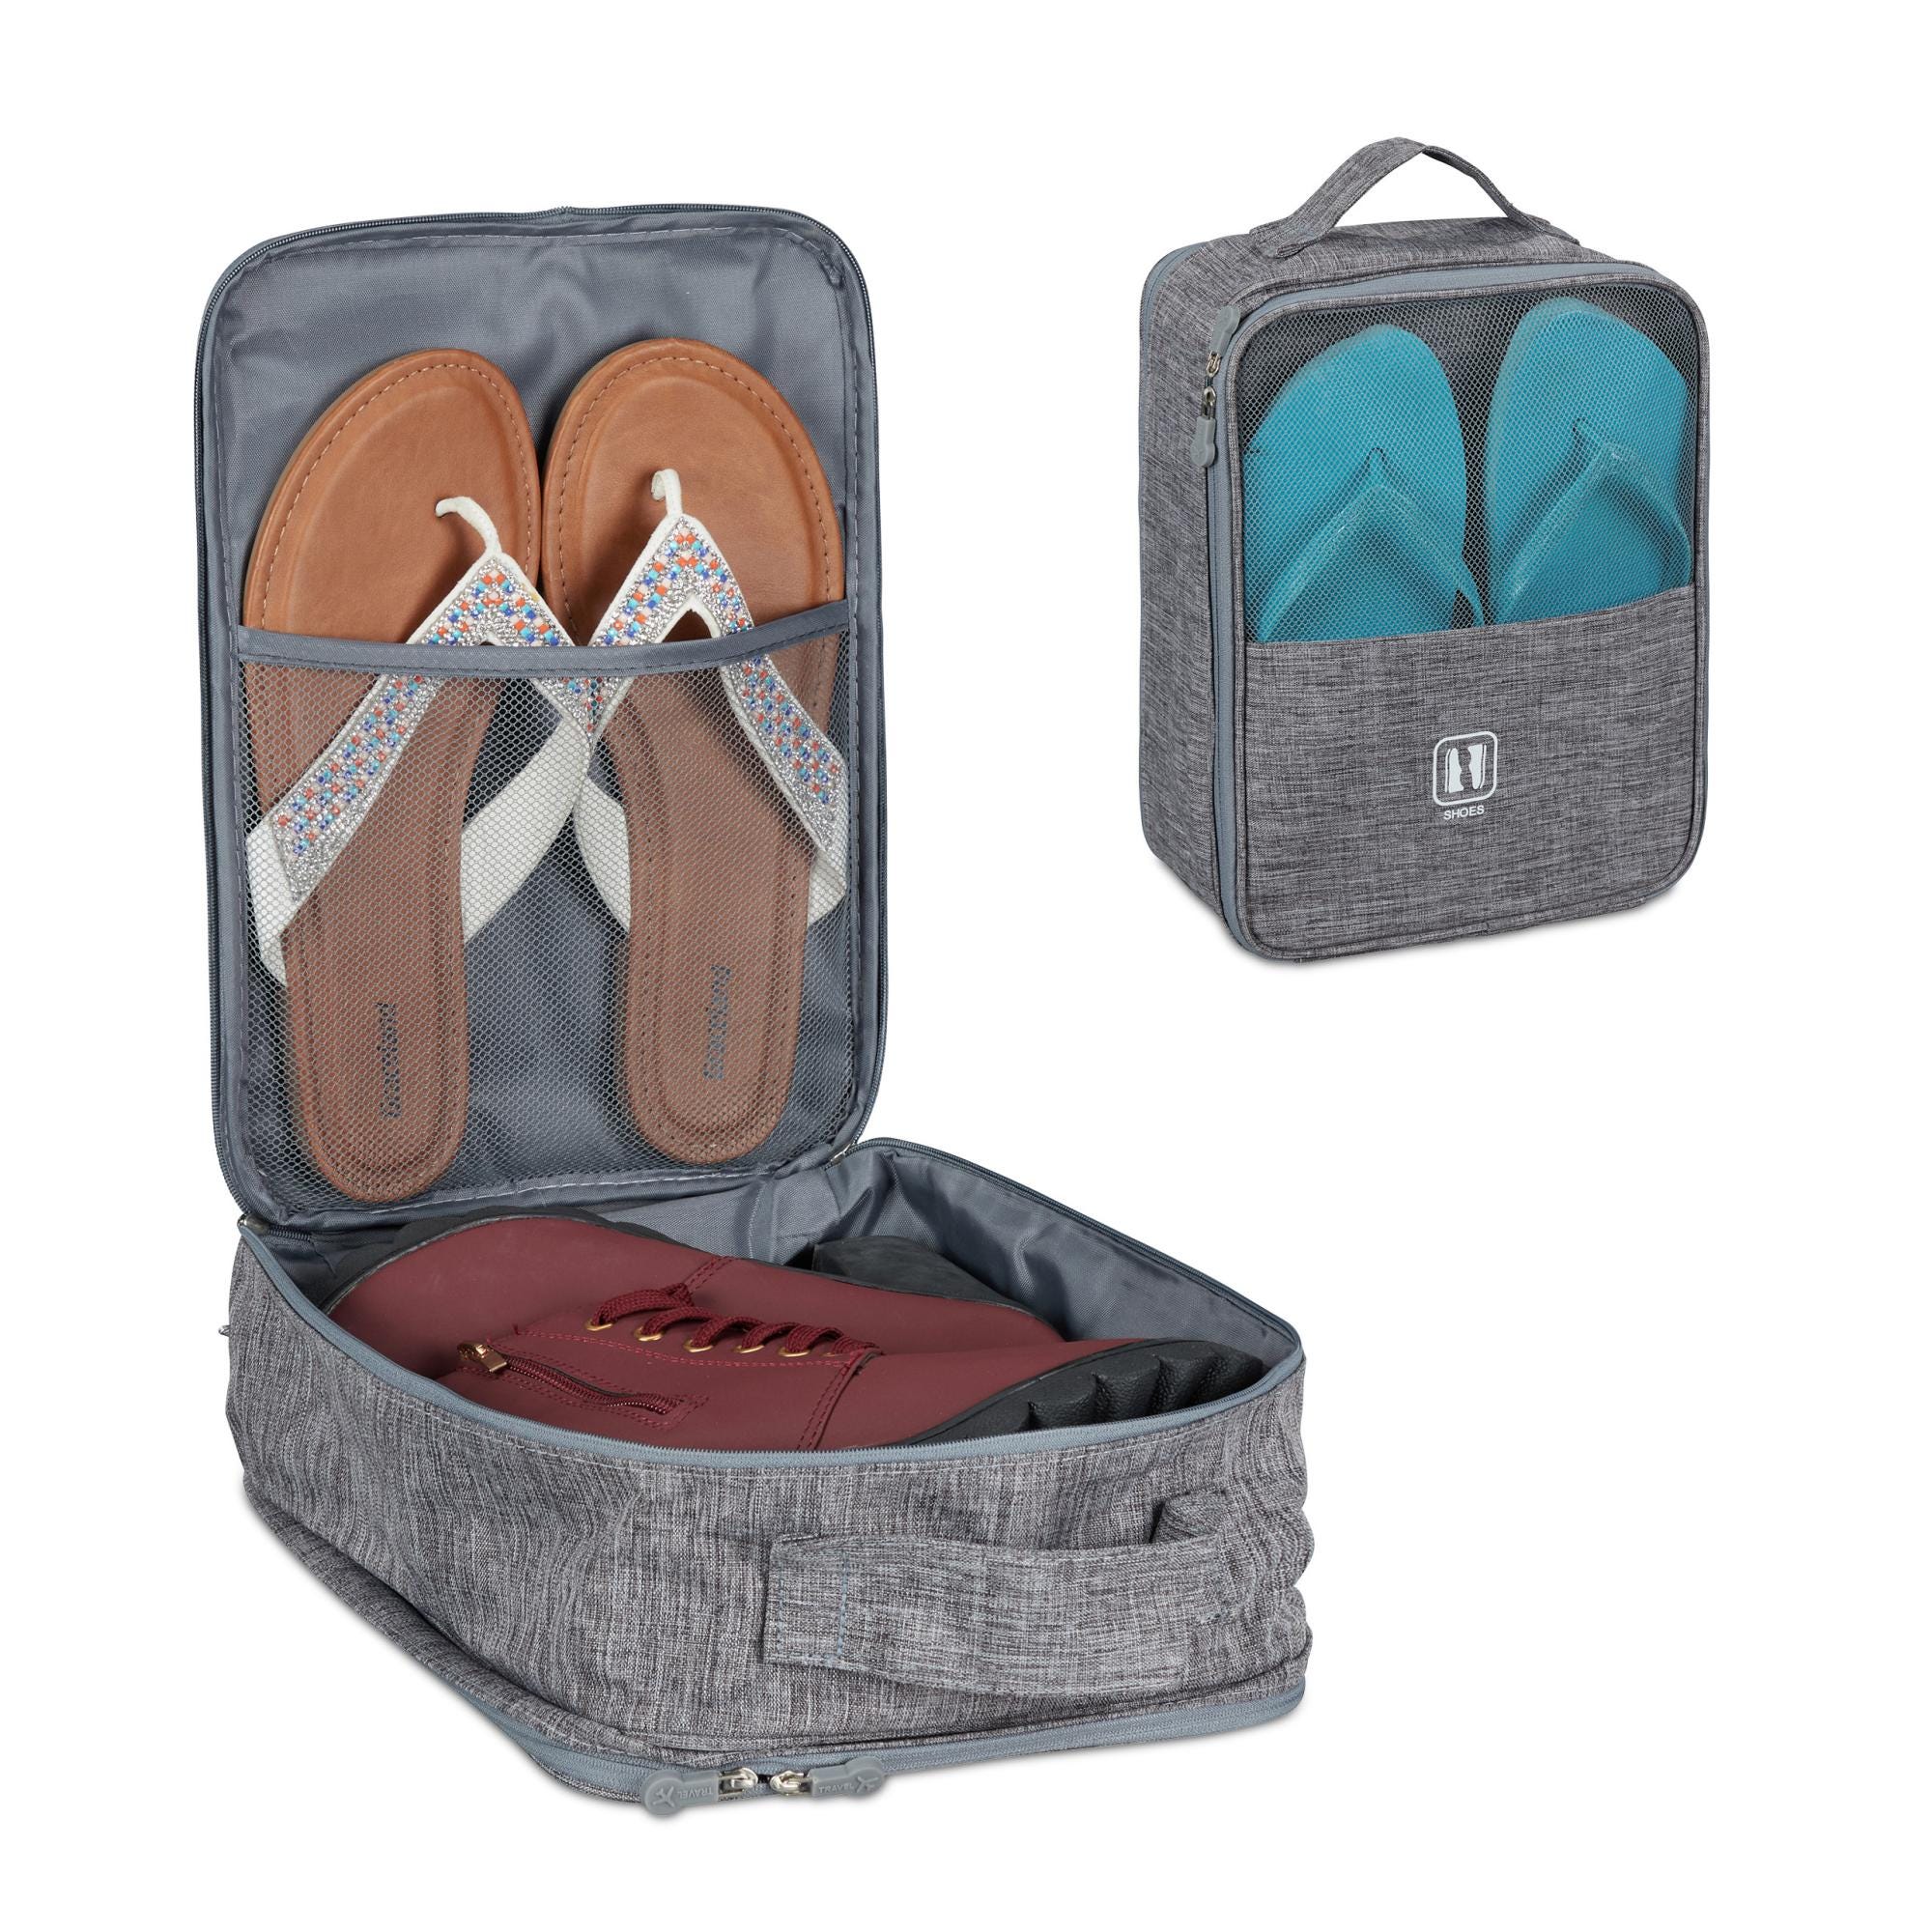 10 sacs à dos avec compartiments chaussures les mieux notés - Sacs de voyage